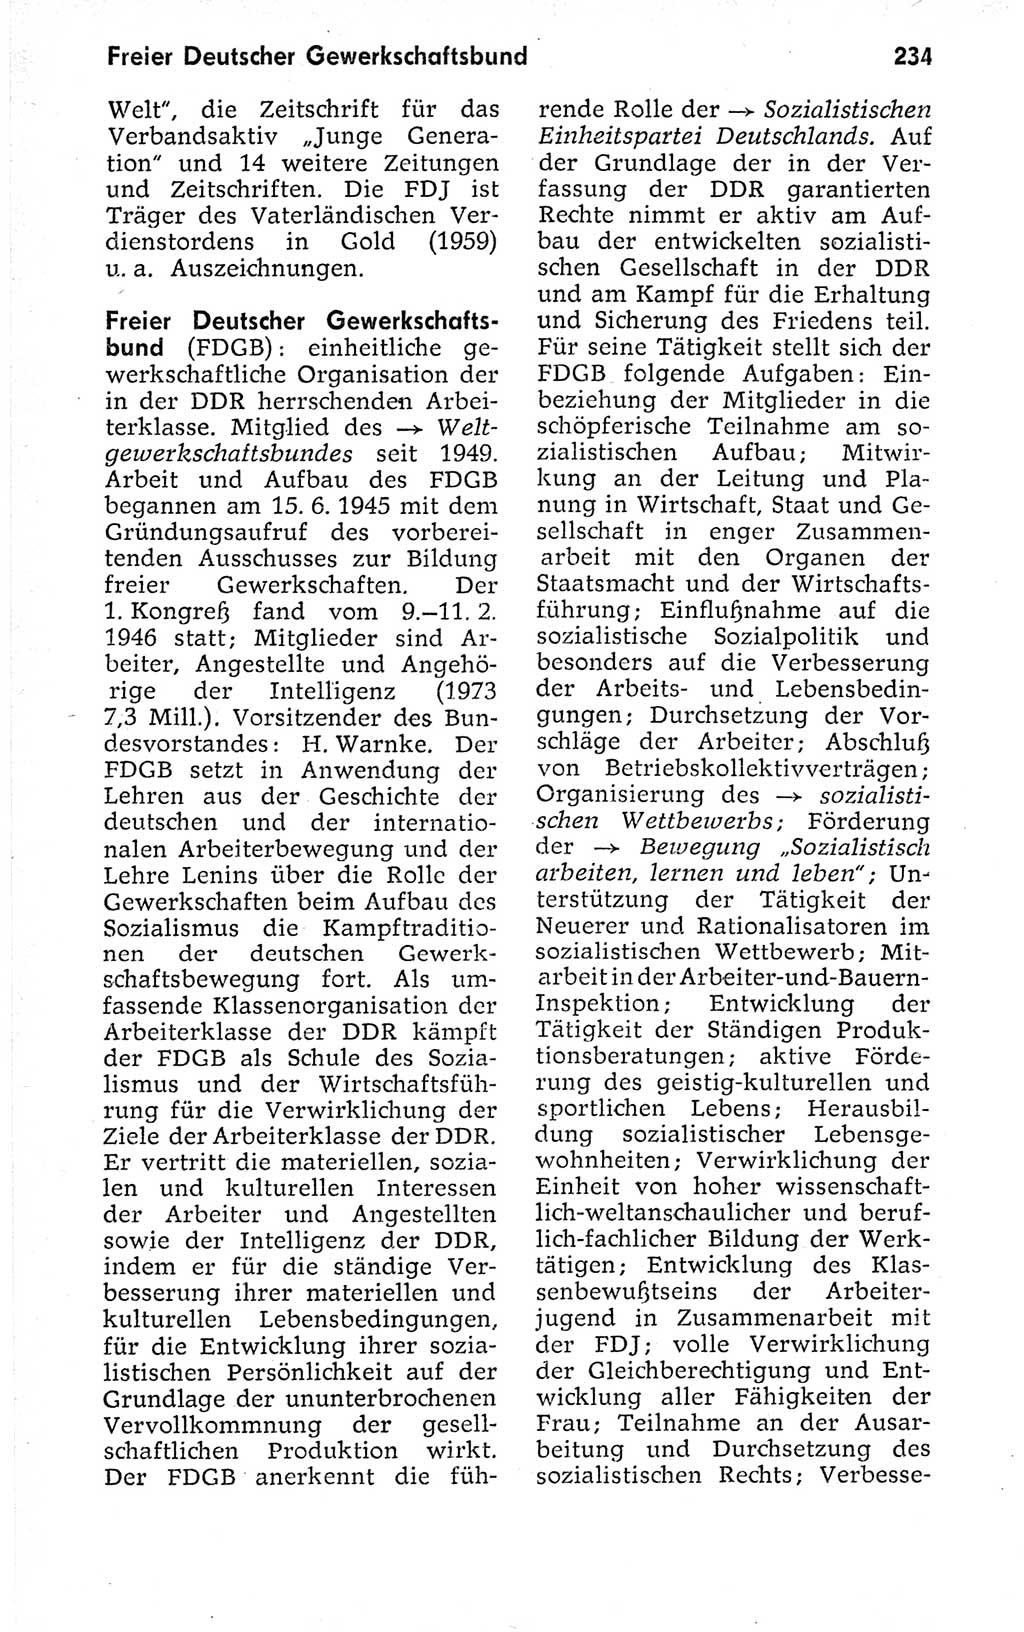 Kleines politisches Wörterbuch [Deutsche Demokratische Republik (DDR)] 1973, Seite 234 (Kl. pol. Wb. DDR 1973, S. 234)